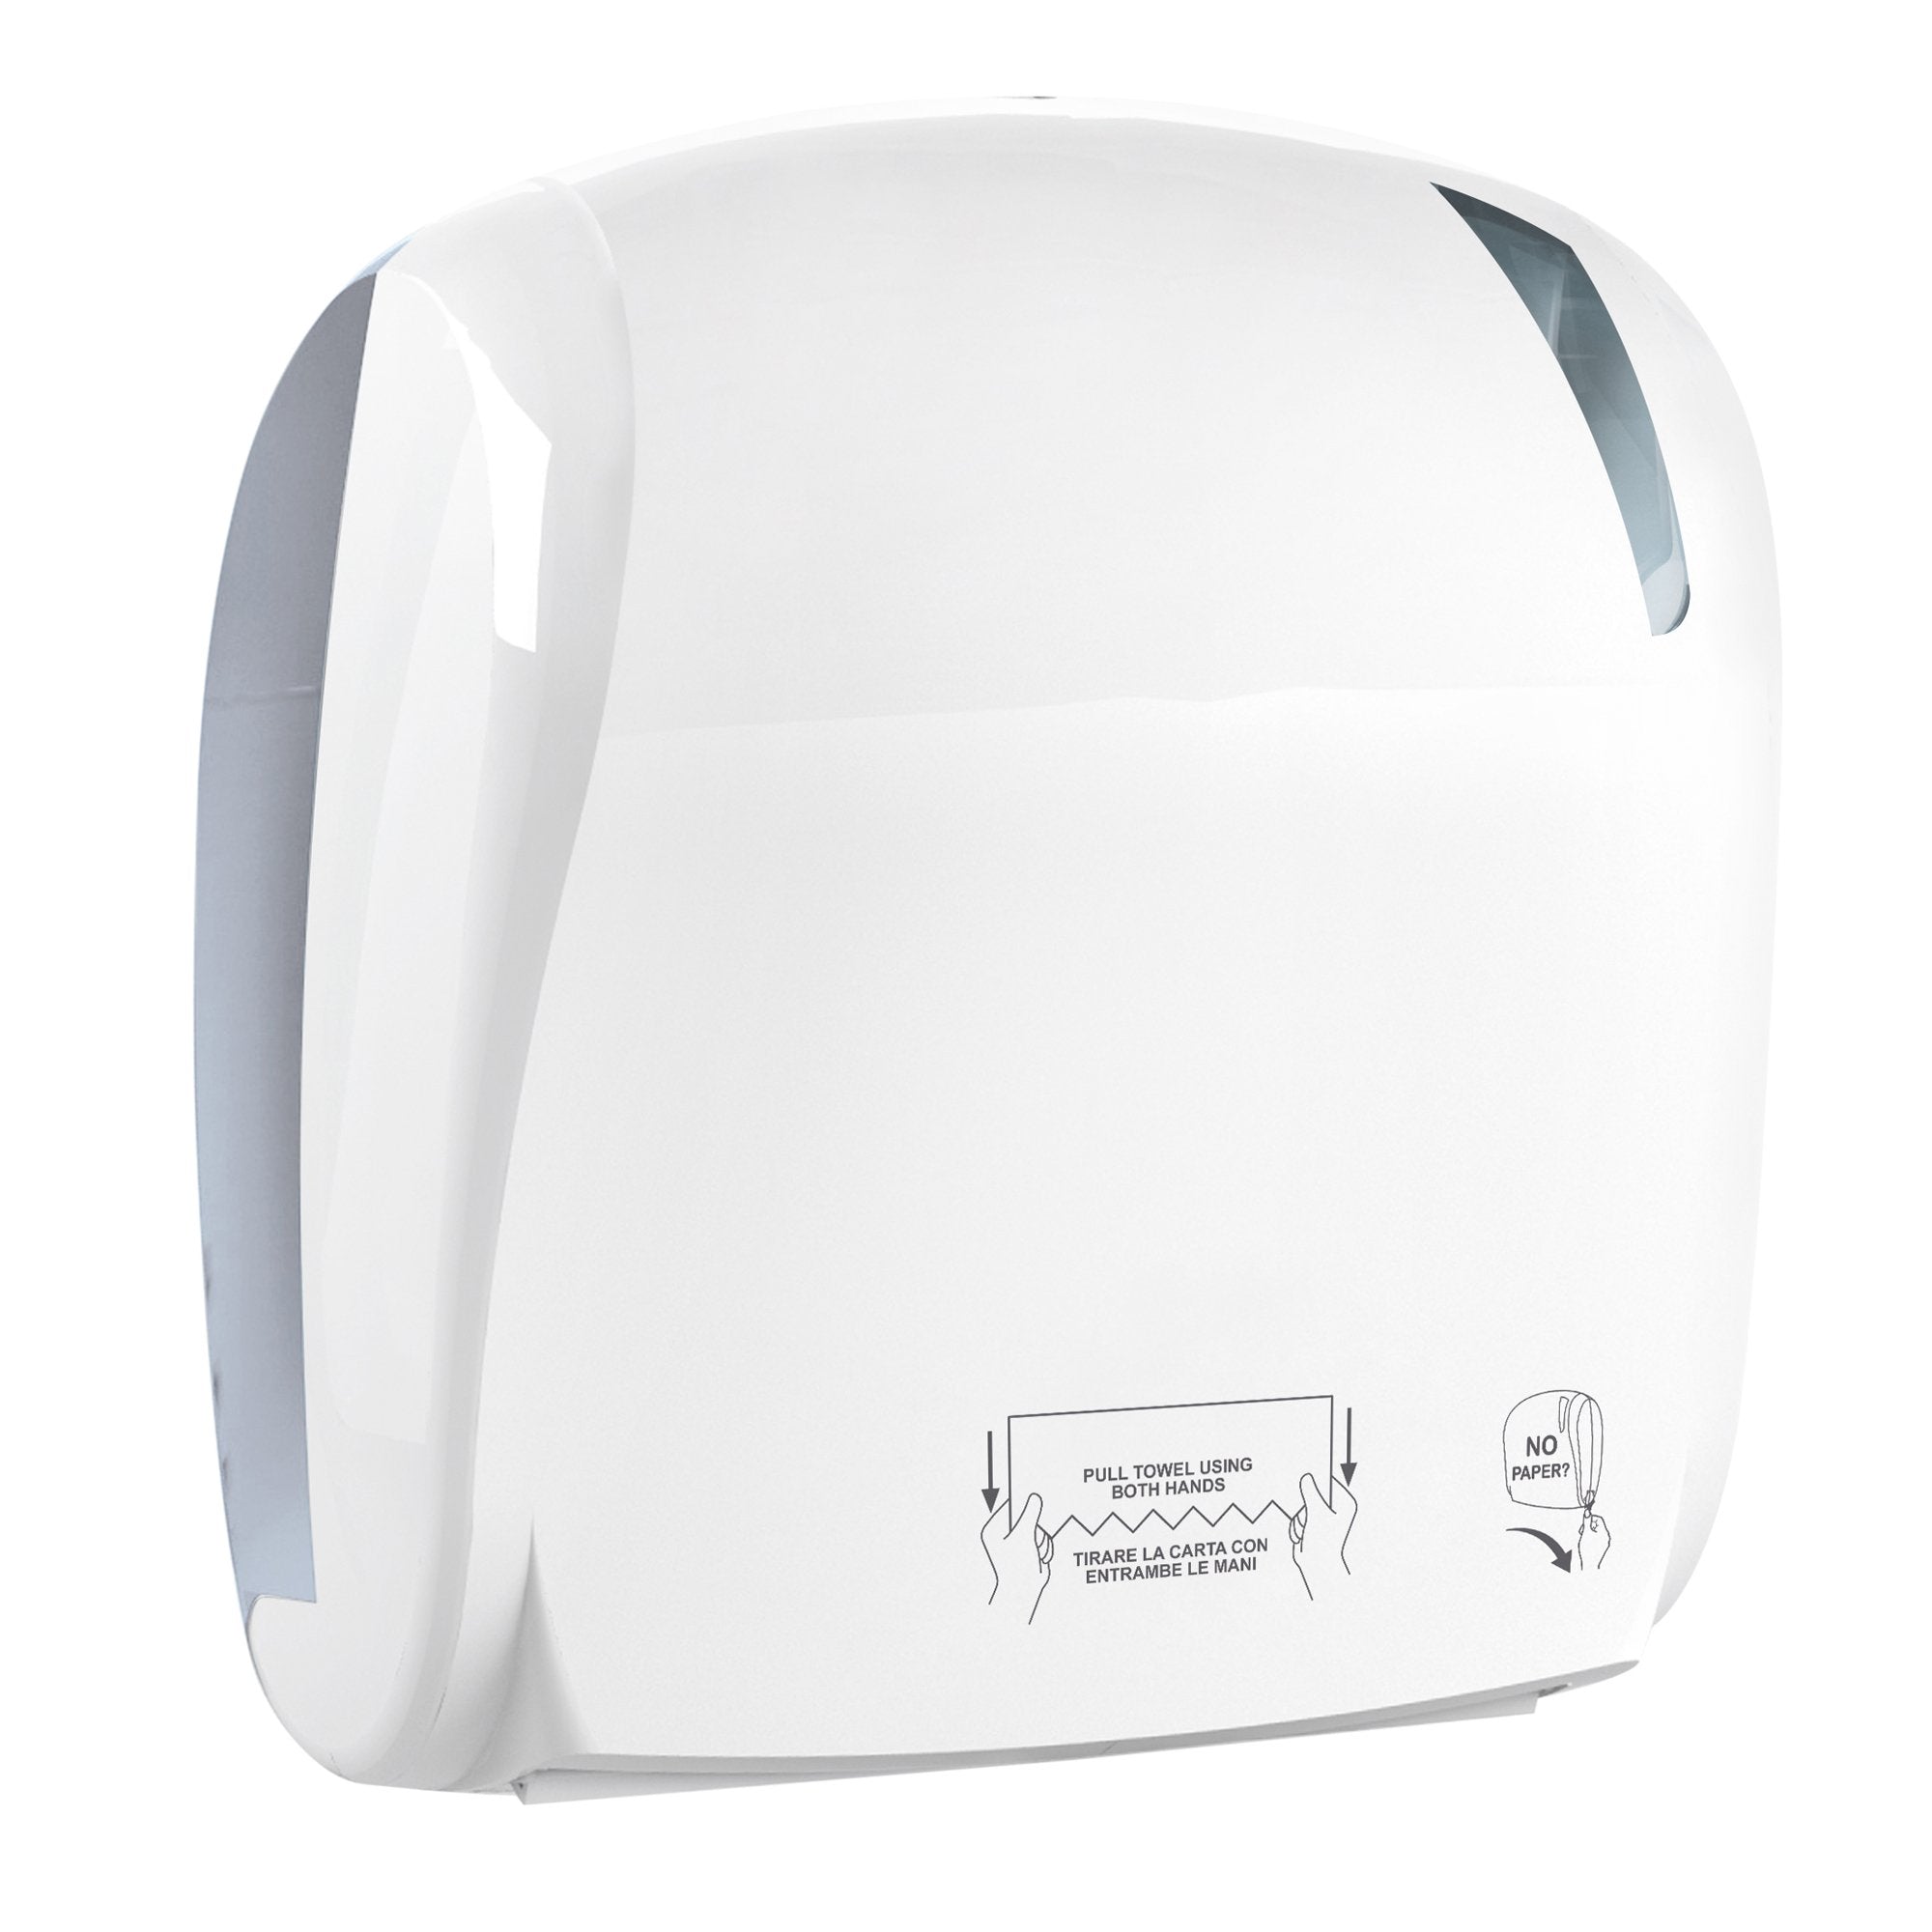 mar-plast-dispenser-advan-884-taglio-automatico-bianco